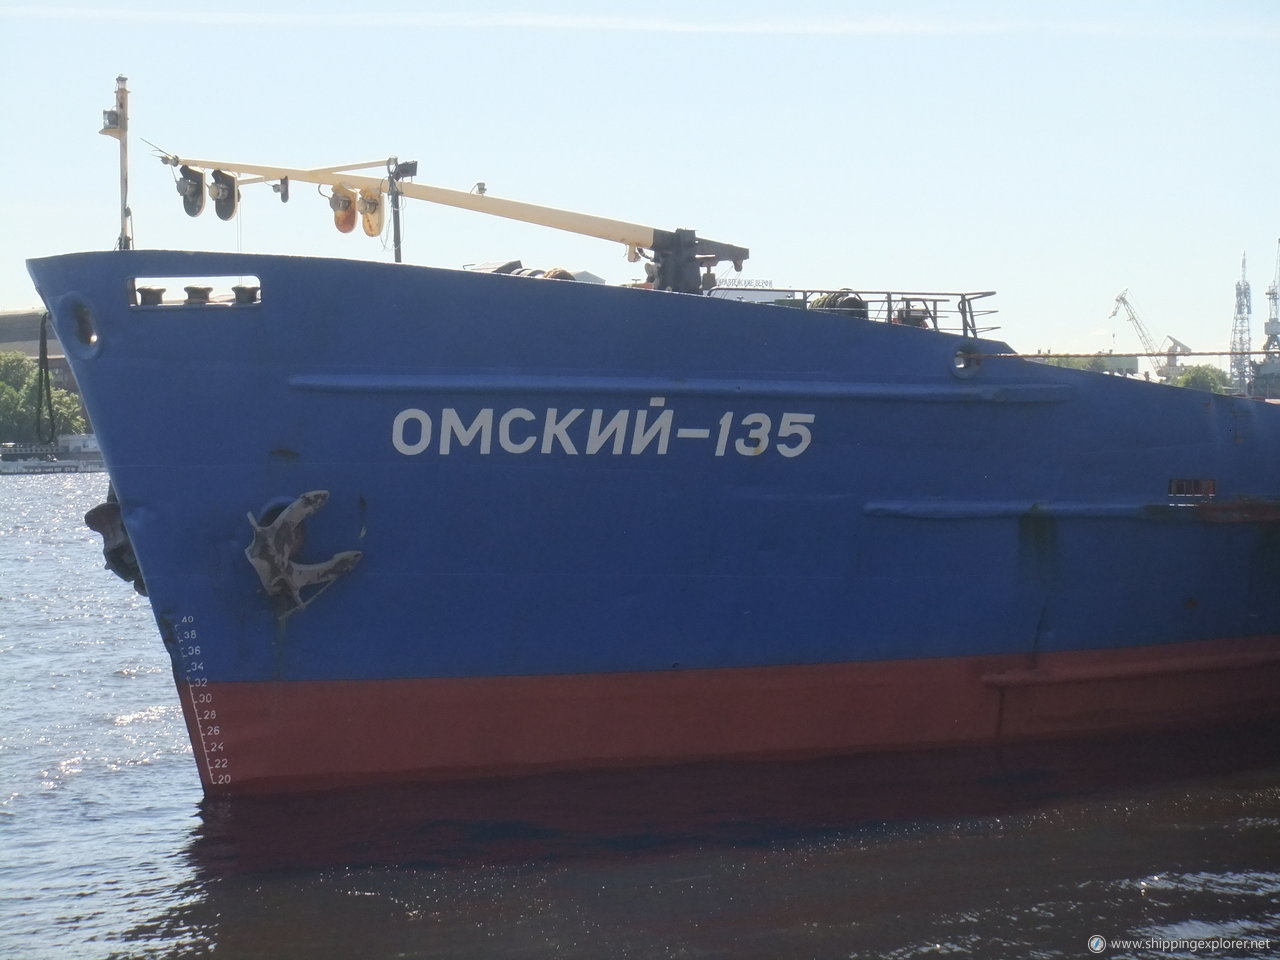 Omskiy-135